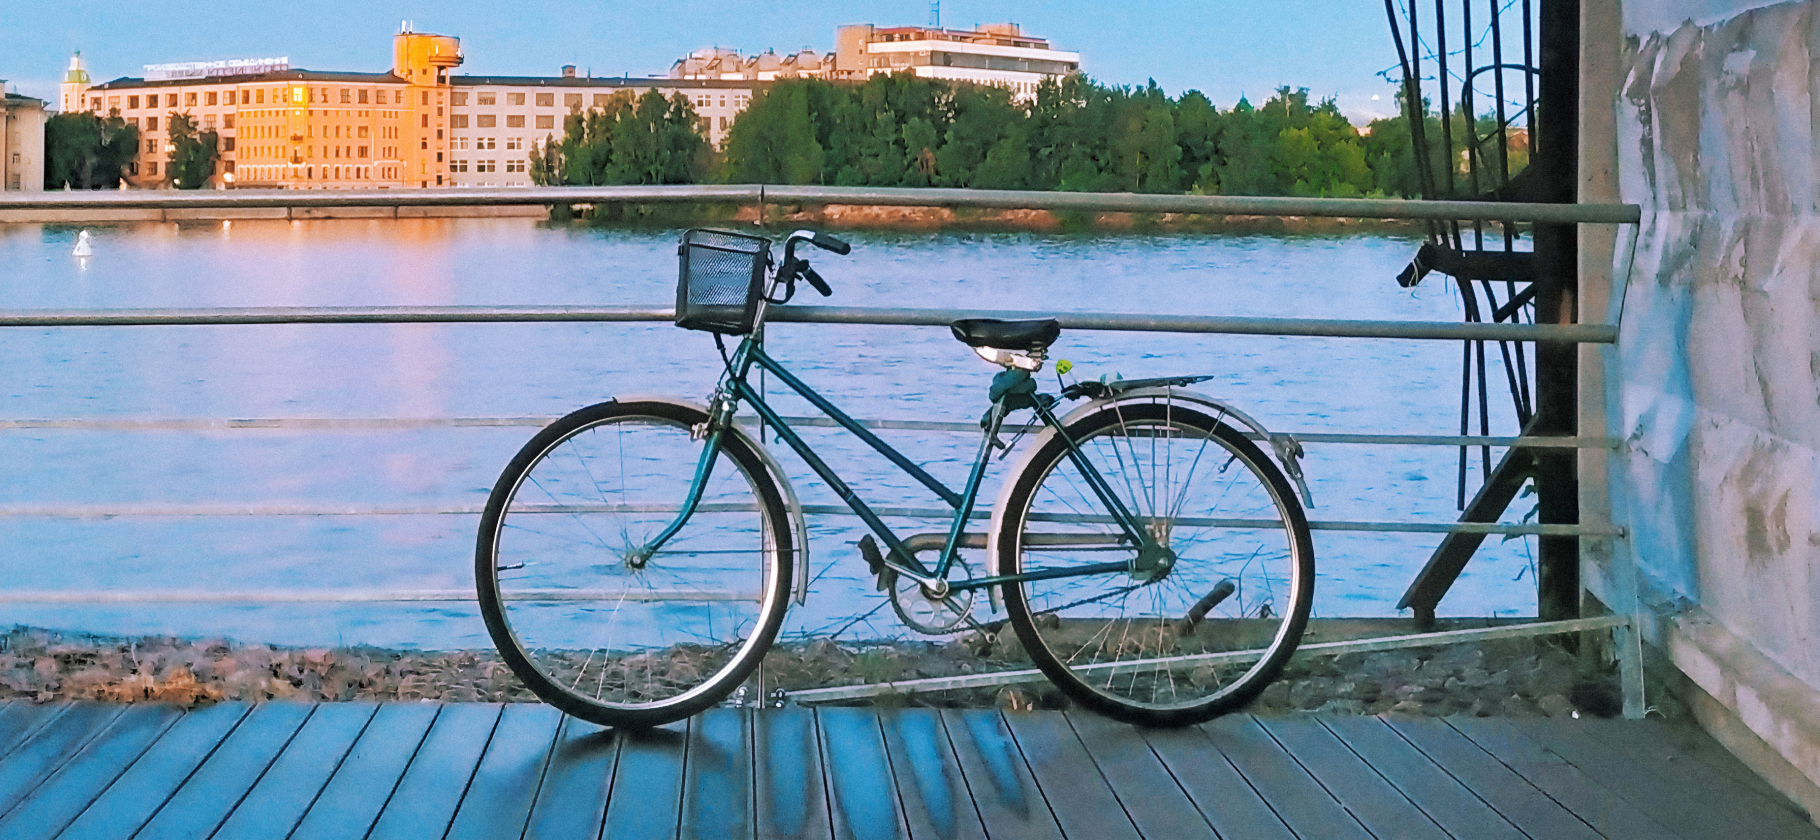 «Чувство свободы во всех смыслах»: 10 причин купить велосипед